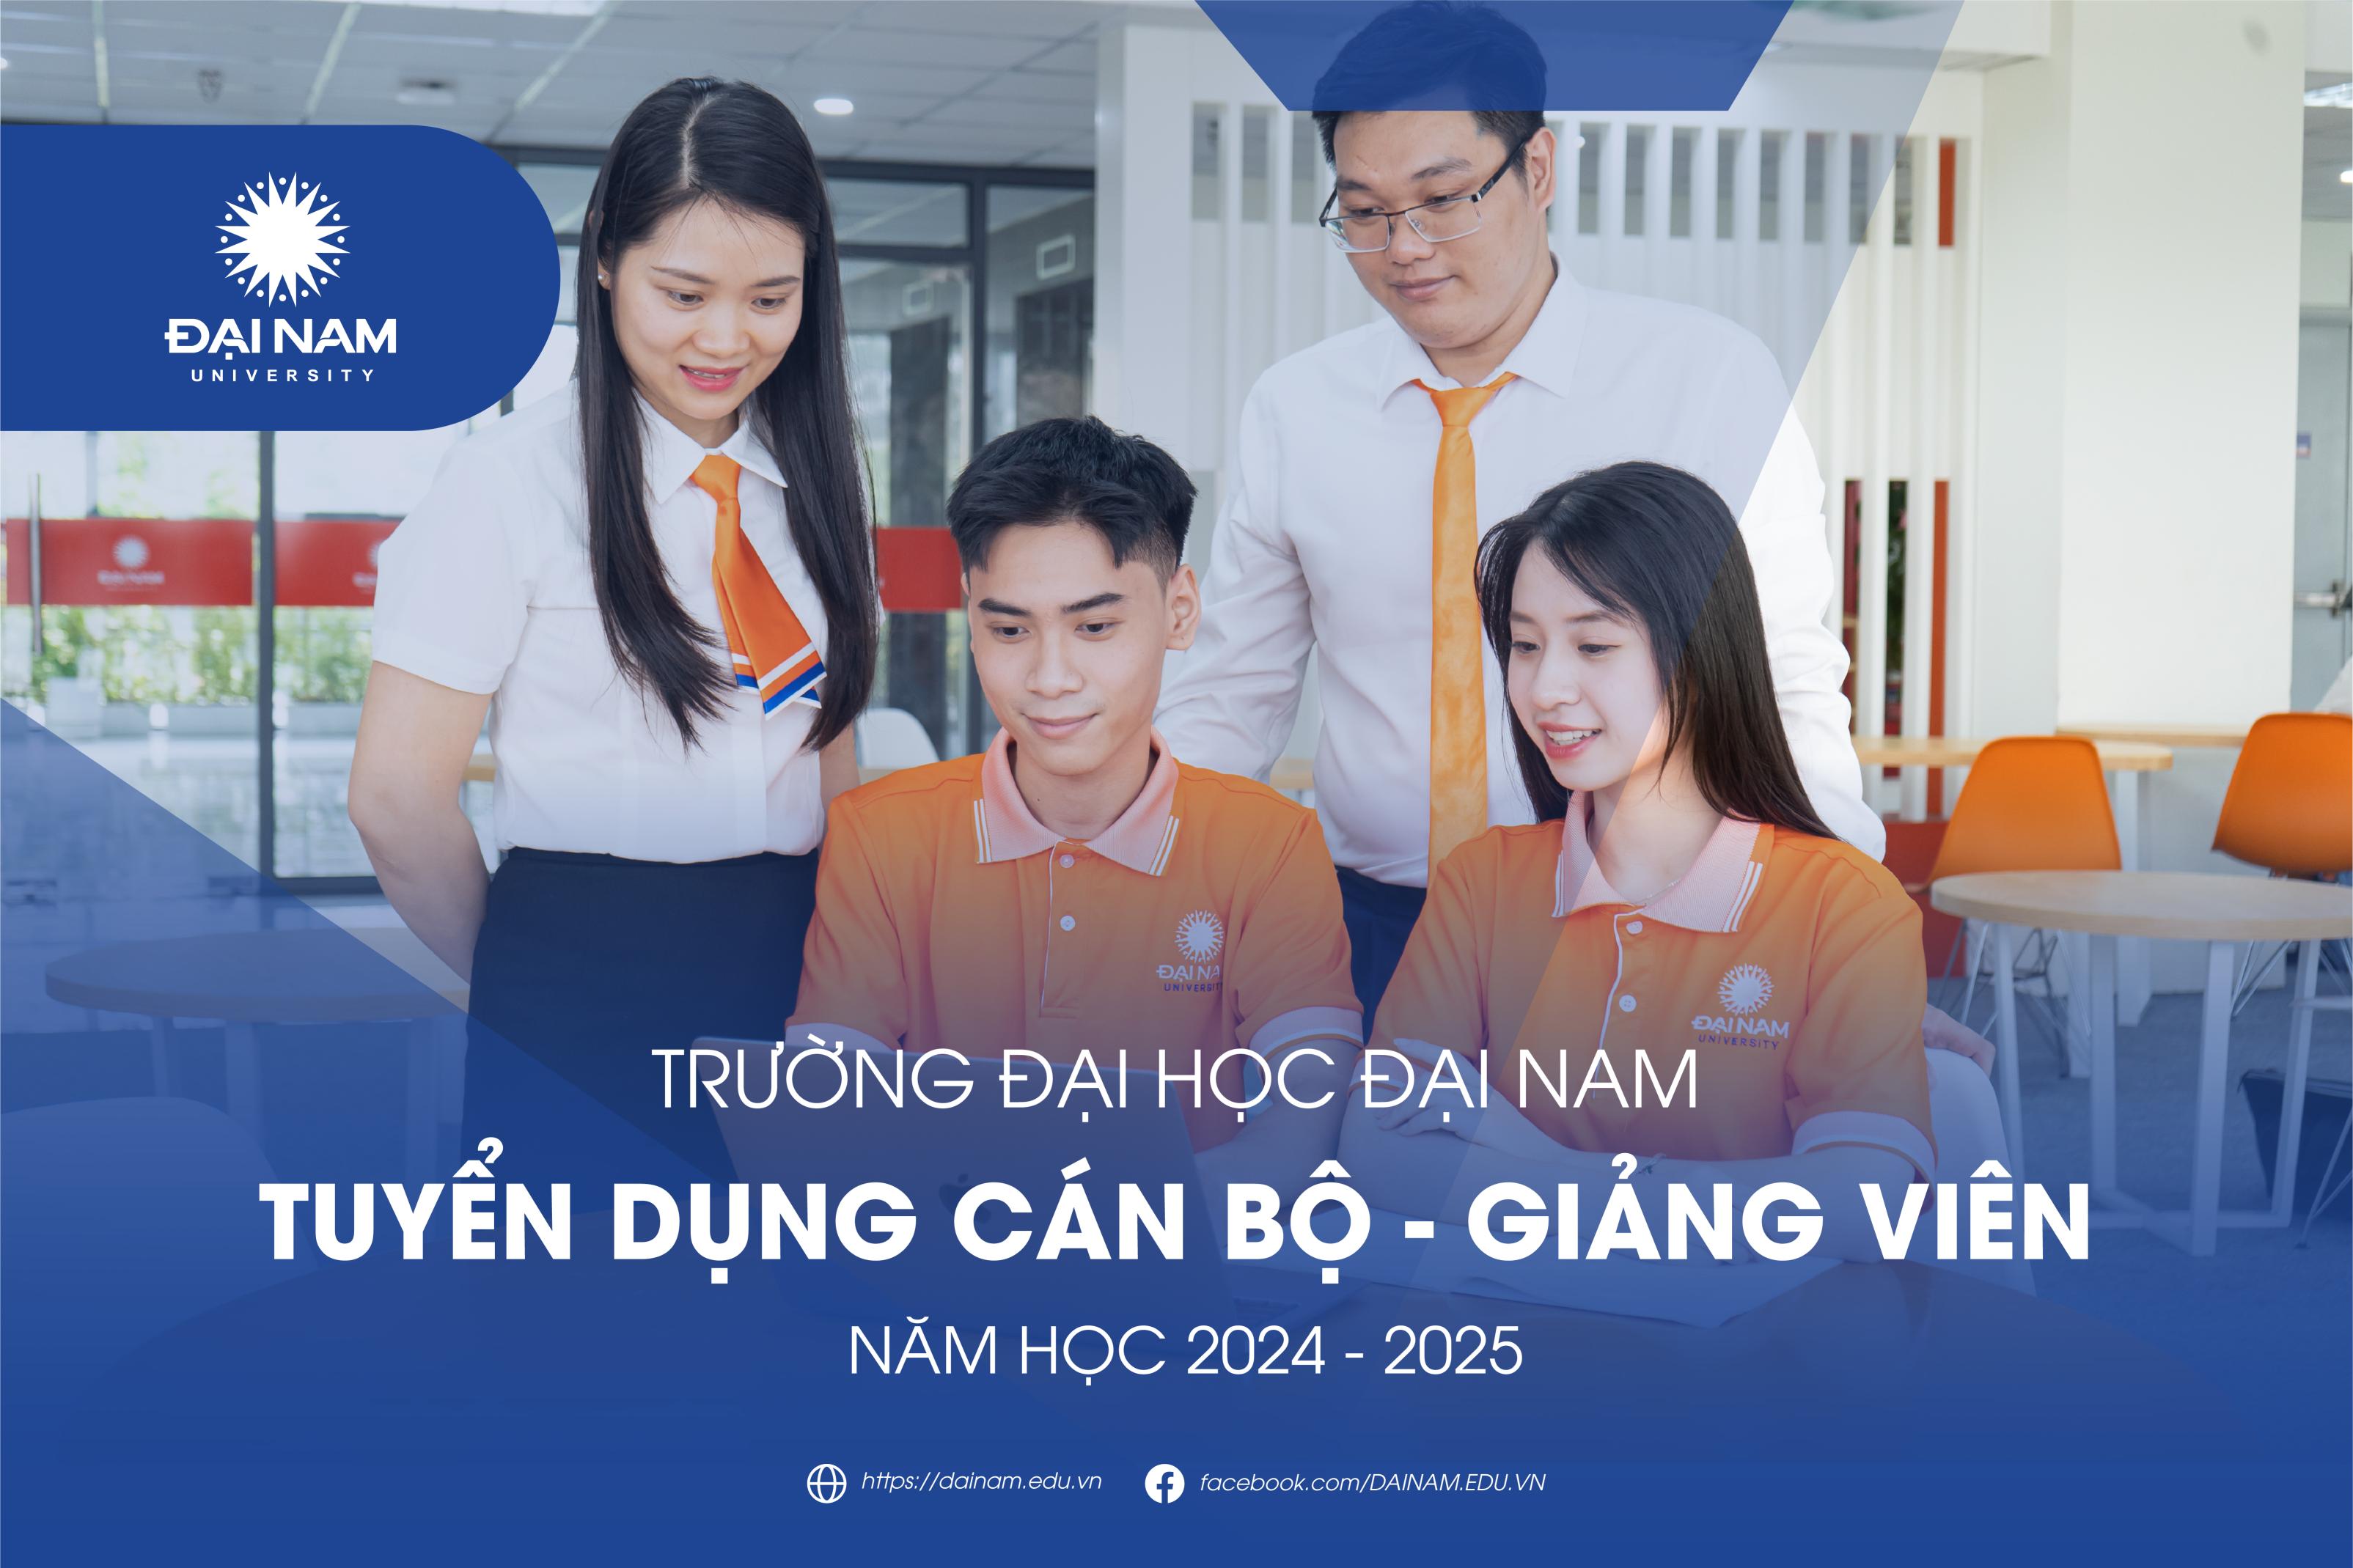 thong-bao-tuyen-dung-can-bo-giang-vien-nam-hoc-2024-2025